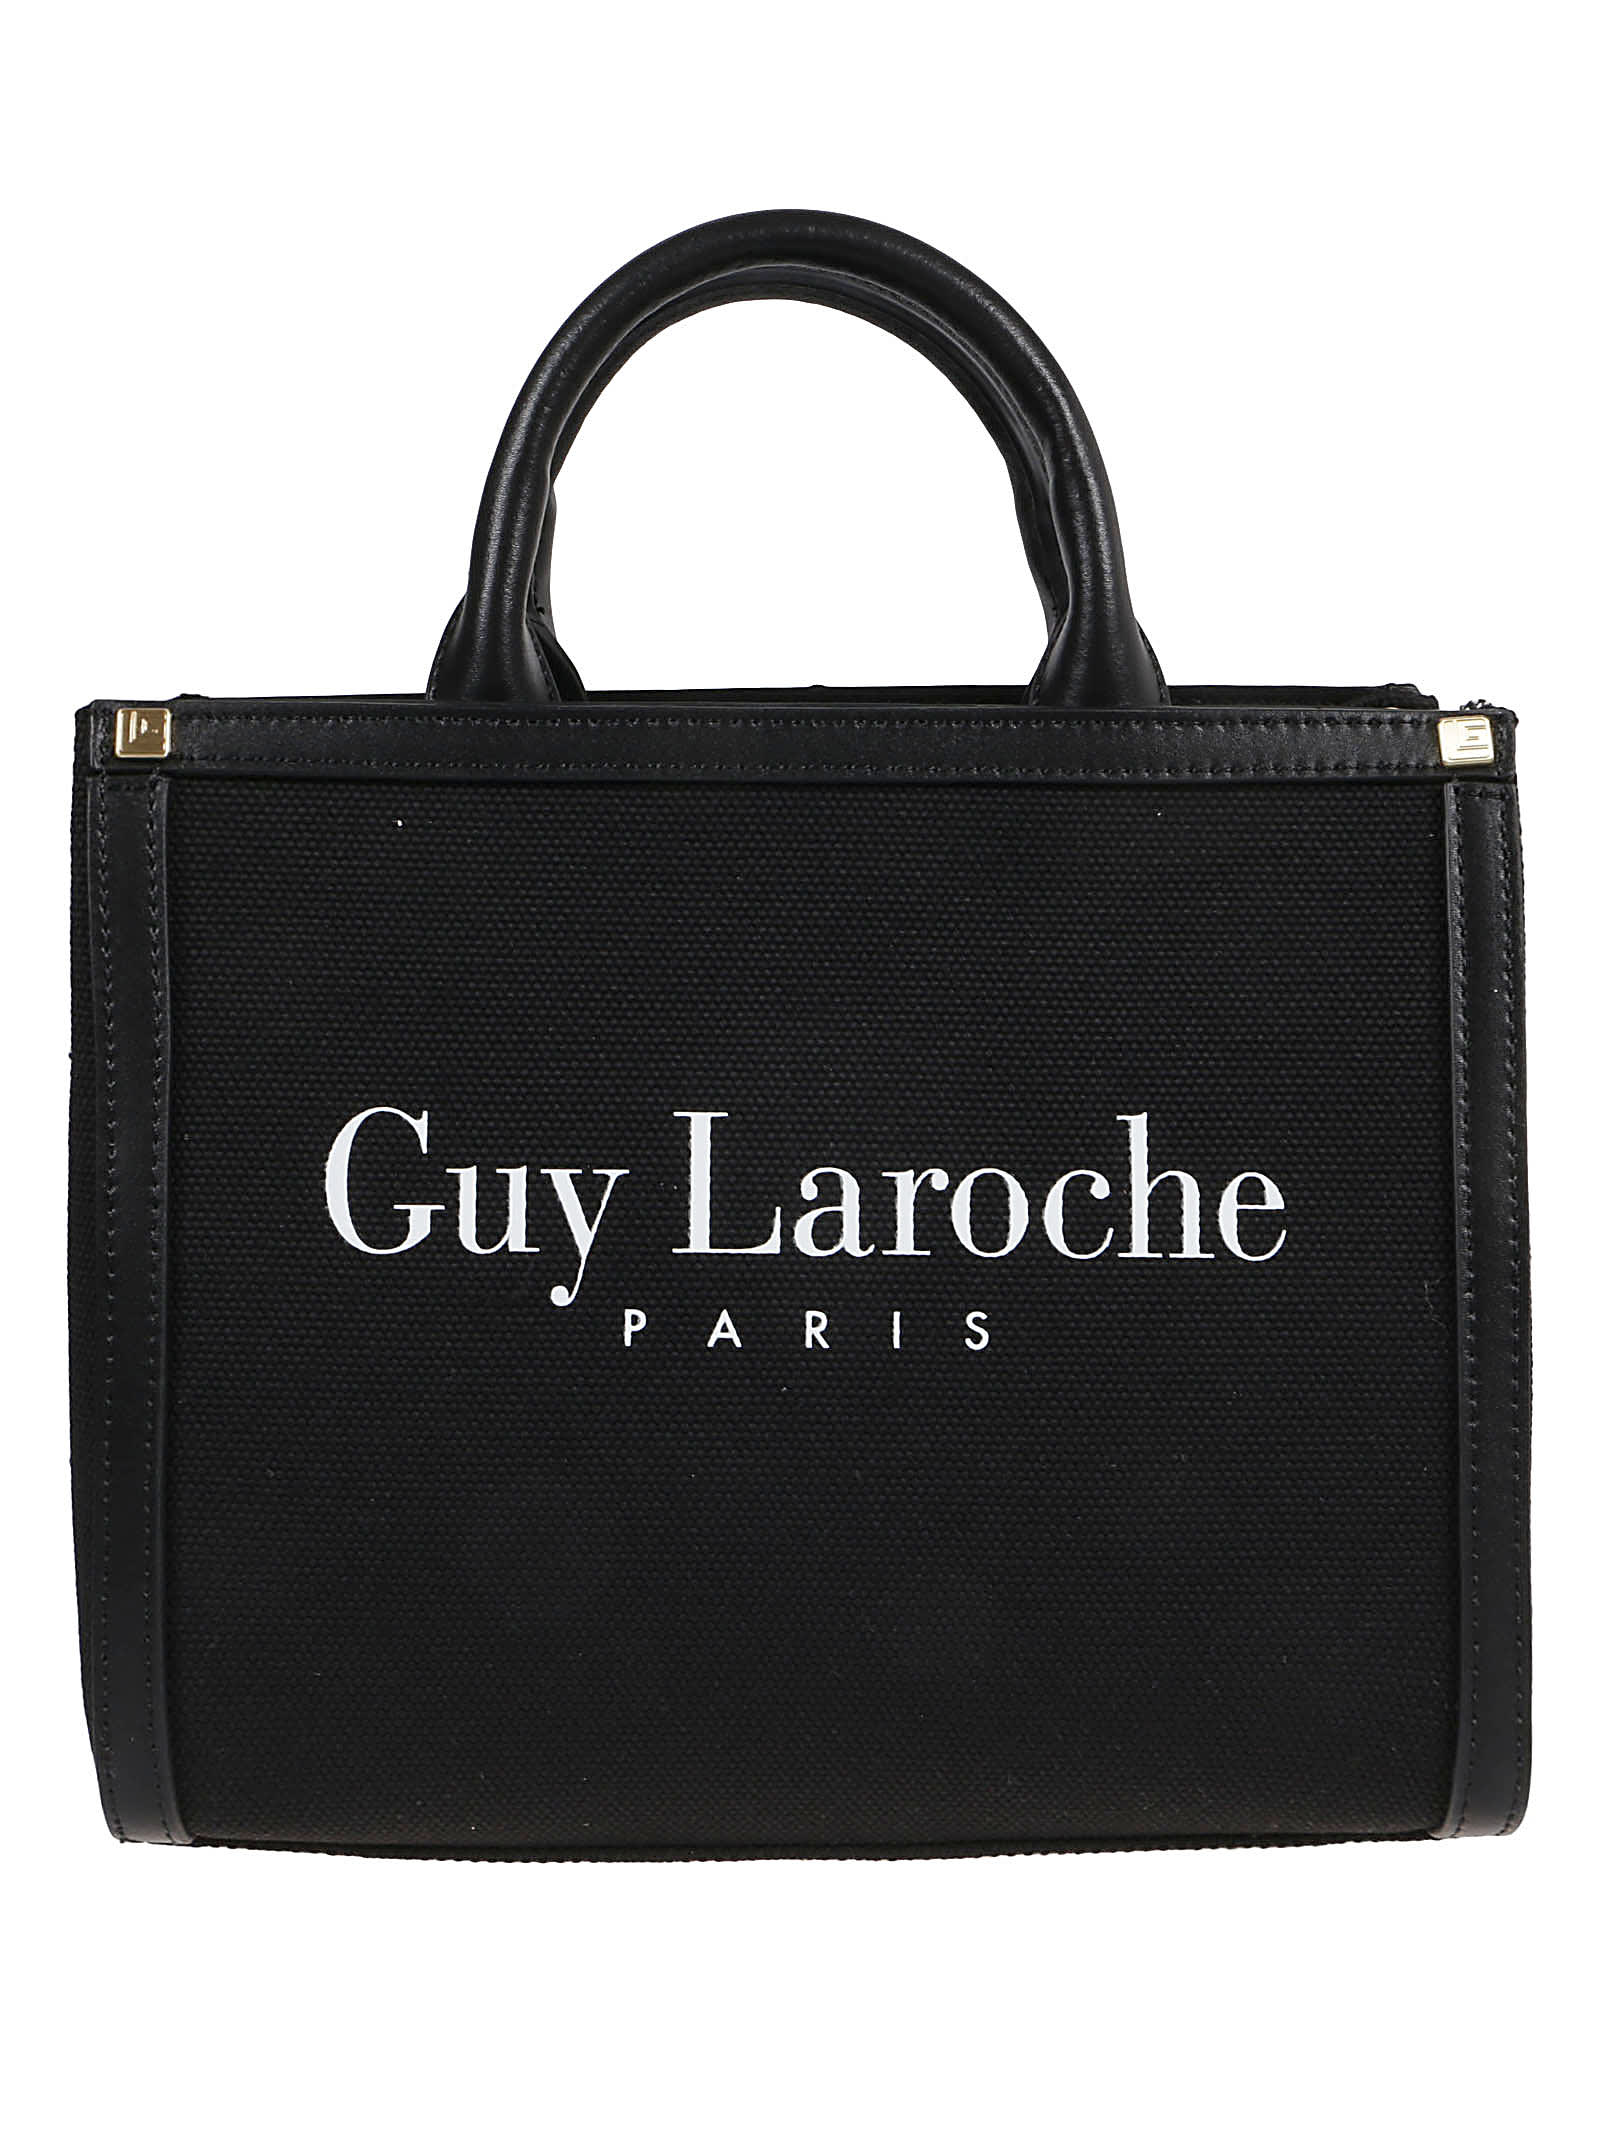 Guy Laroche Small Tote Bag